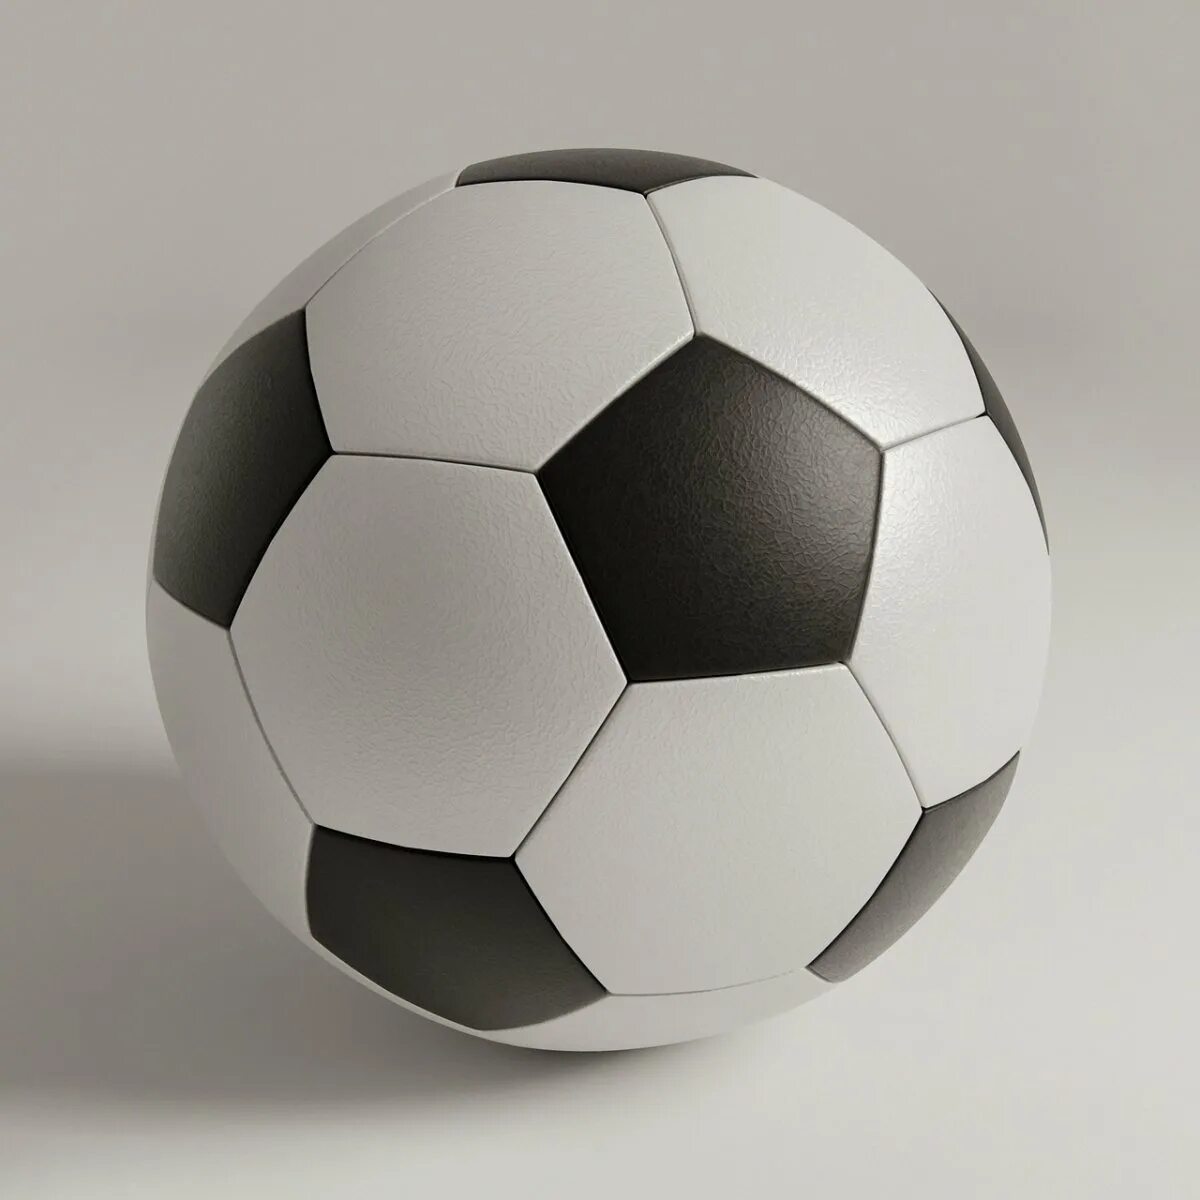 Мяч. Футбольный мяч. Классический футбольный мяч. Футбольный мяч белый. Футбольный мяч классический черно белый.